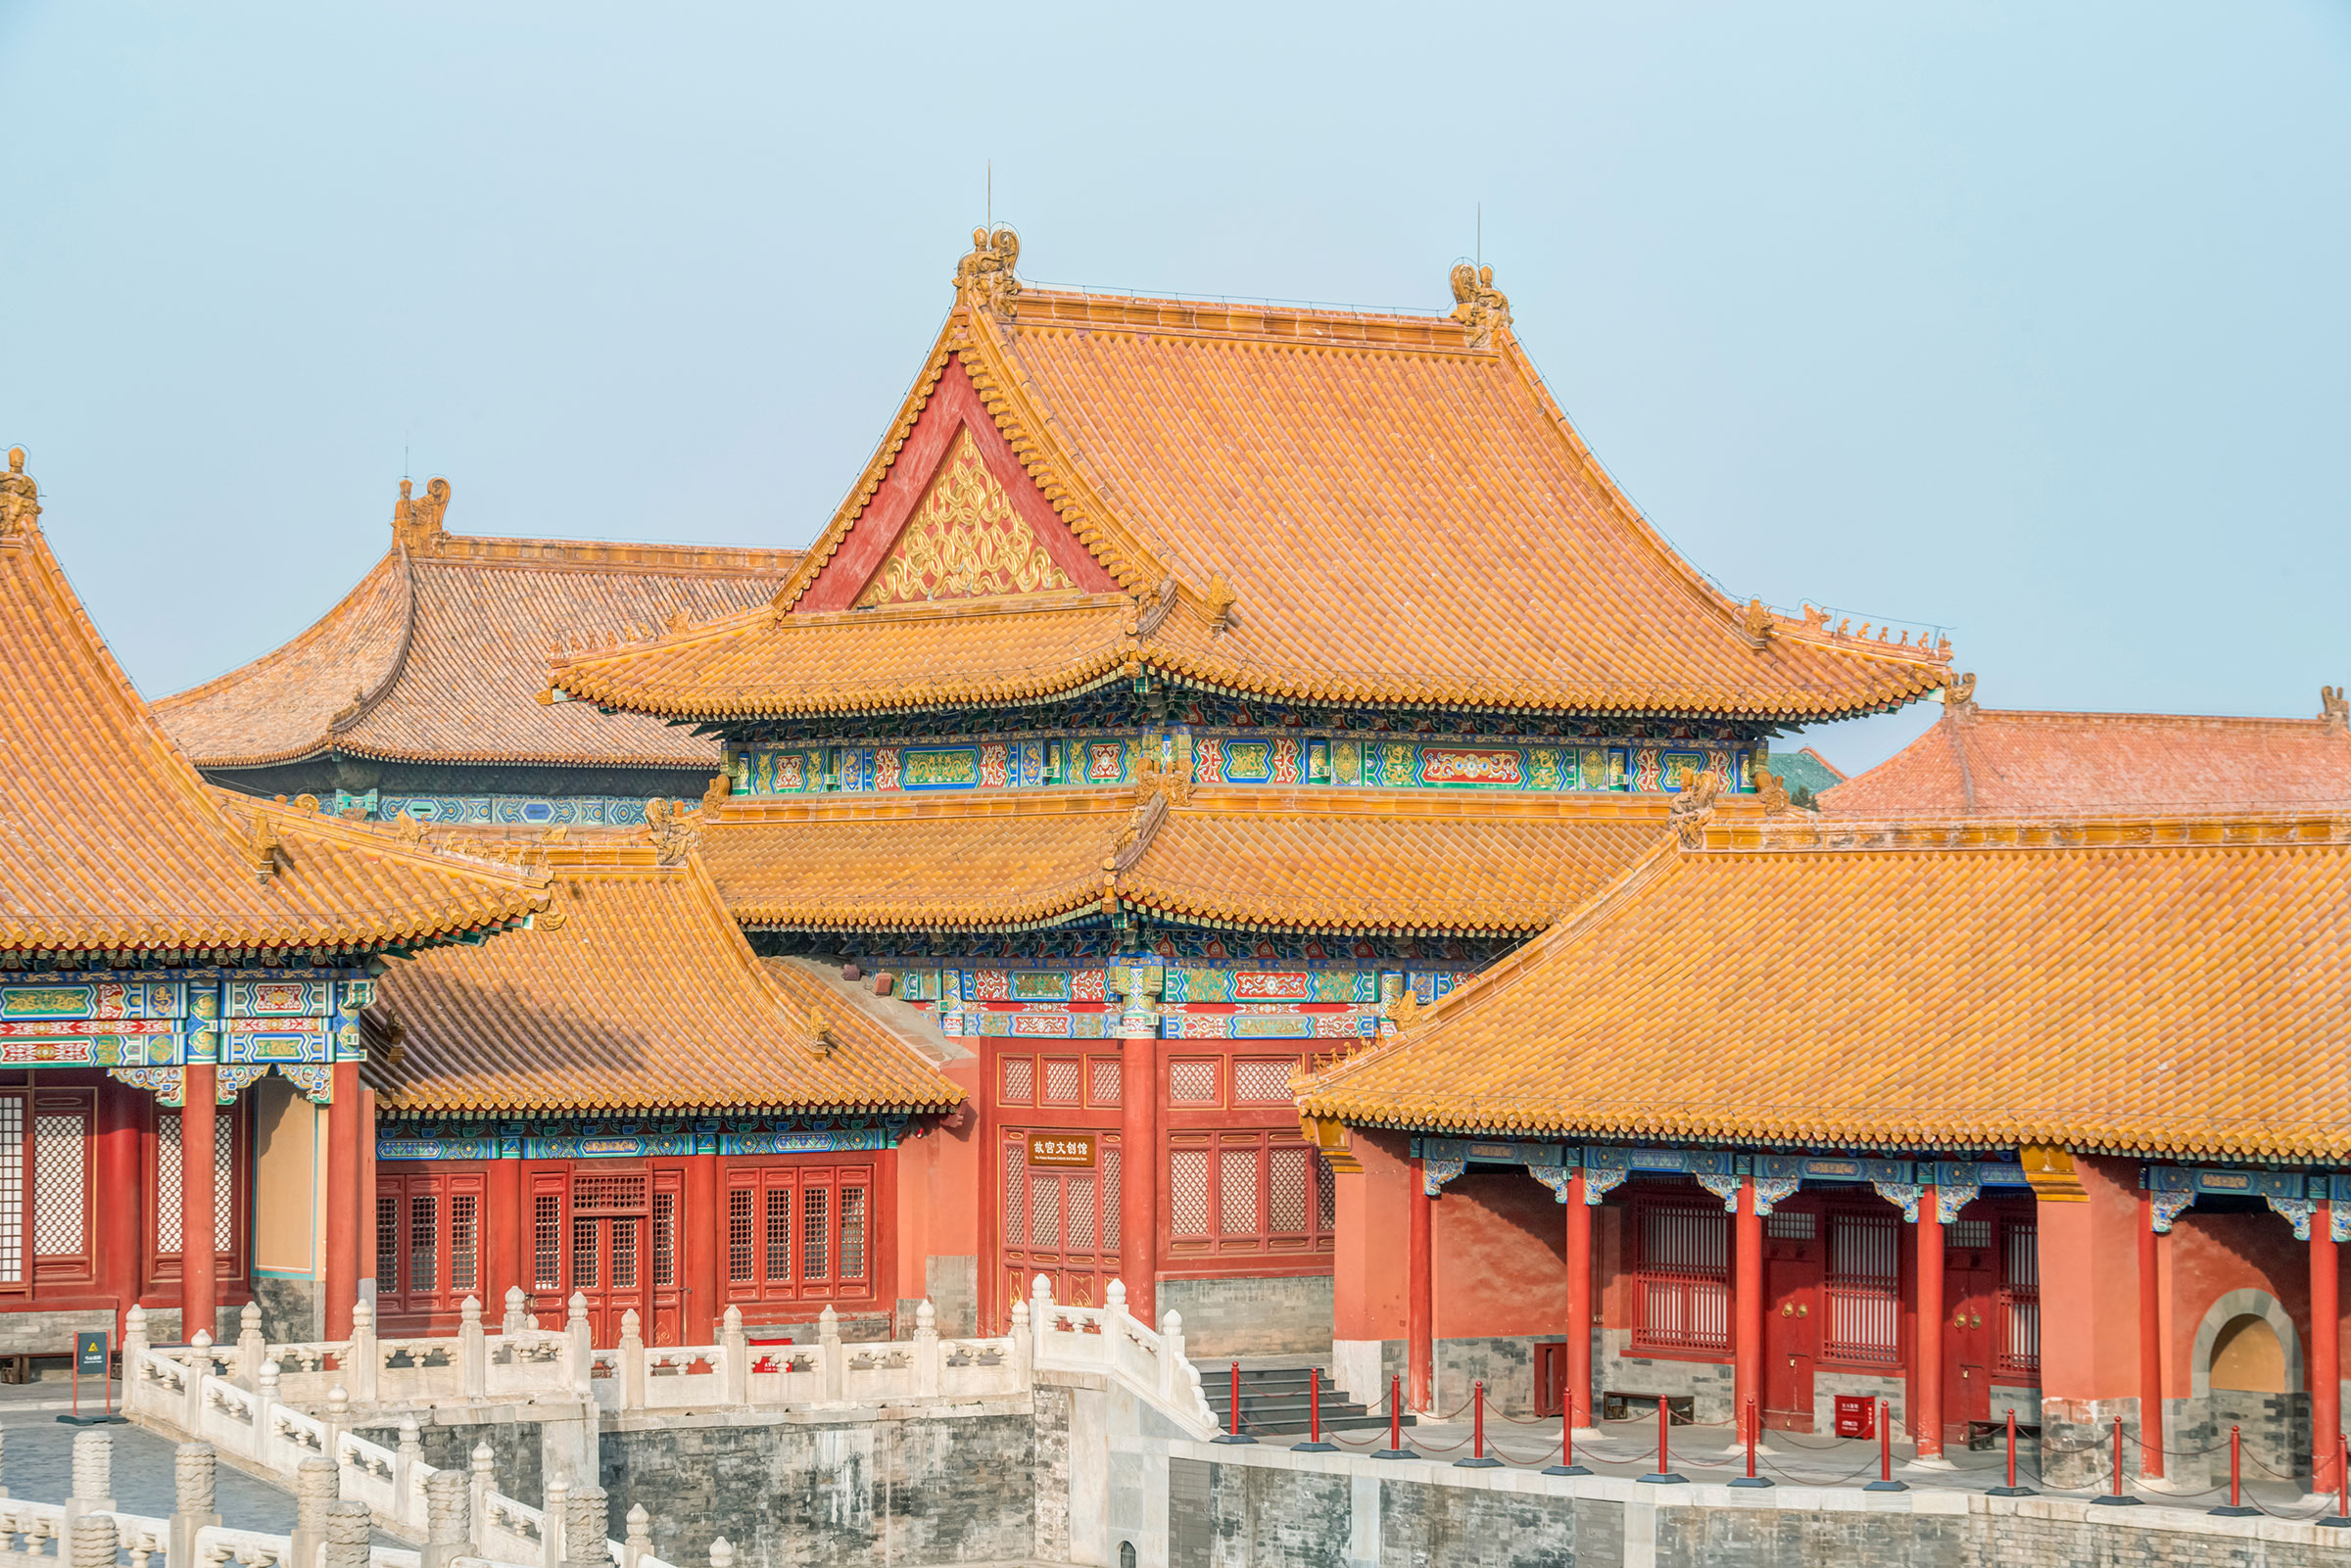 The Forbidden City in Beijing, China. (Danita Delimont—Shutterstock)